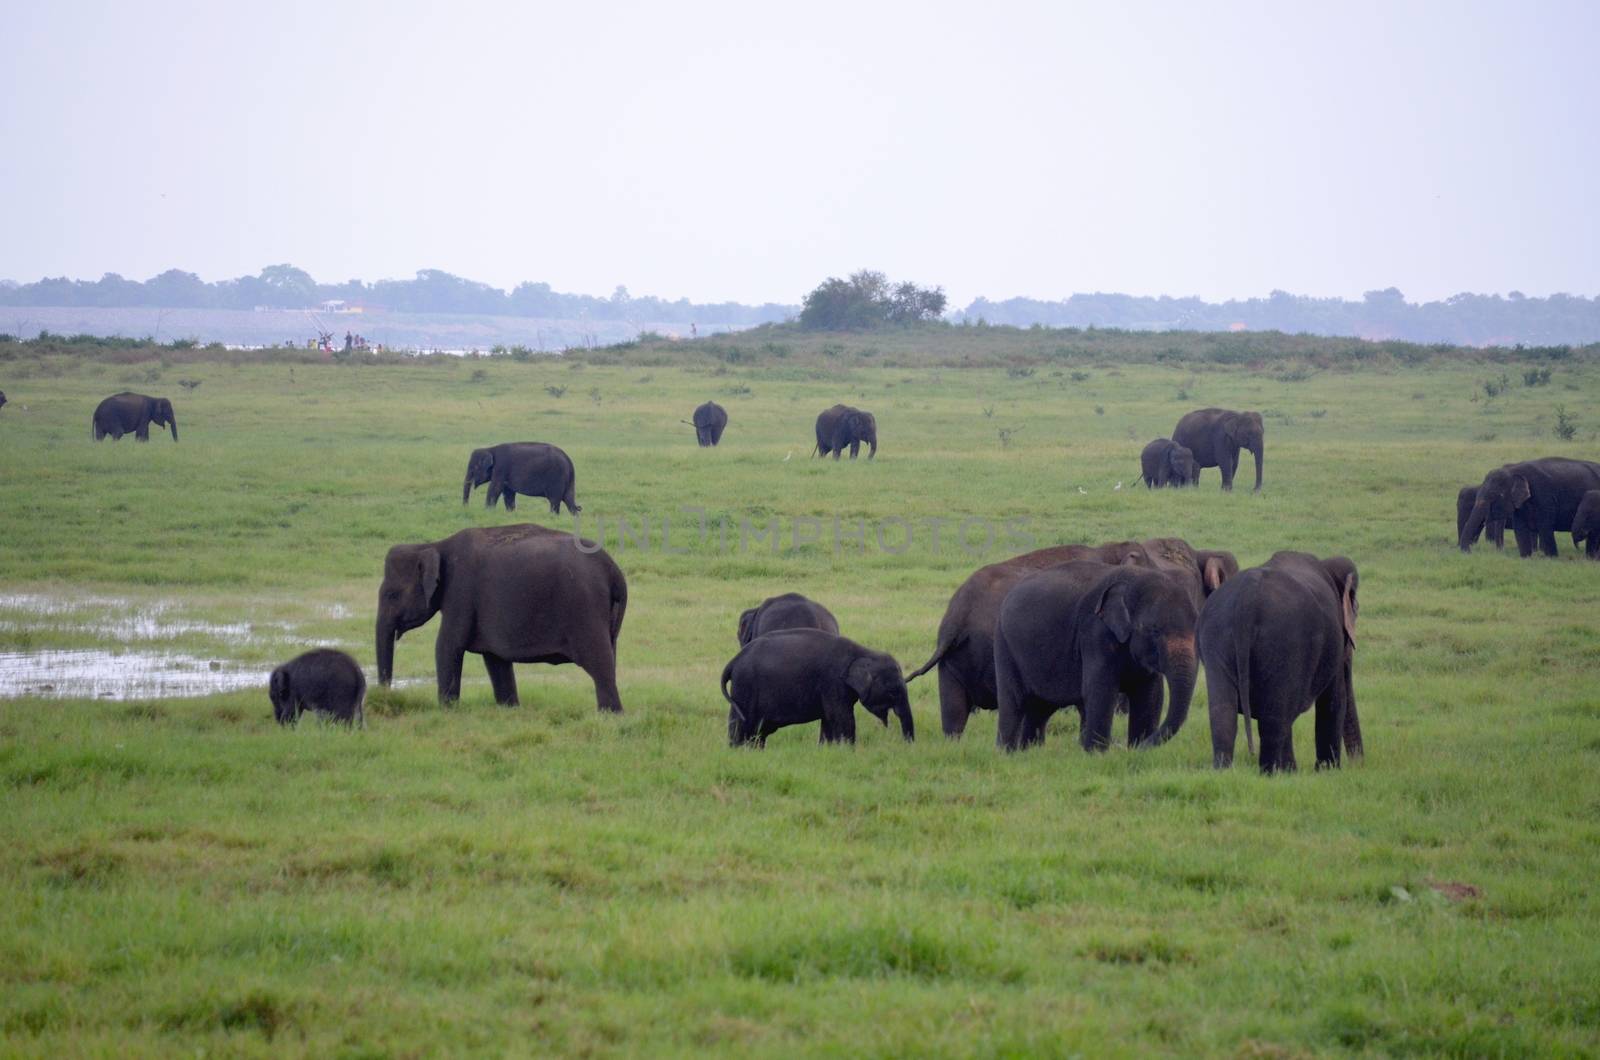 Elephants in the beautiful landscape by inguaribile